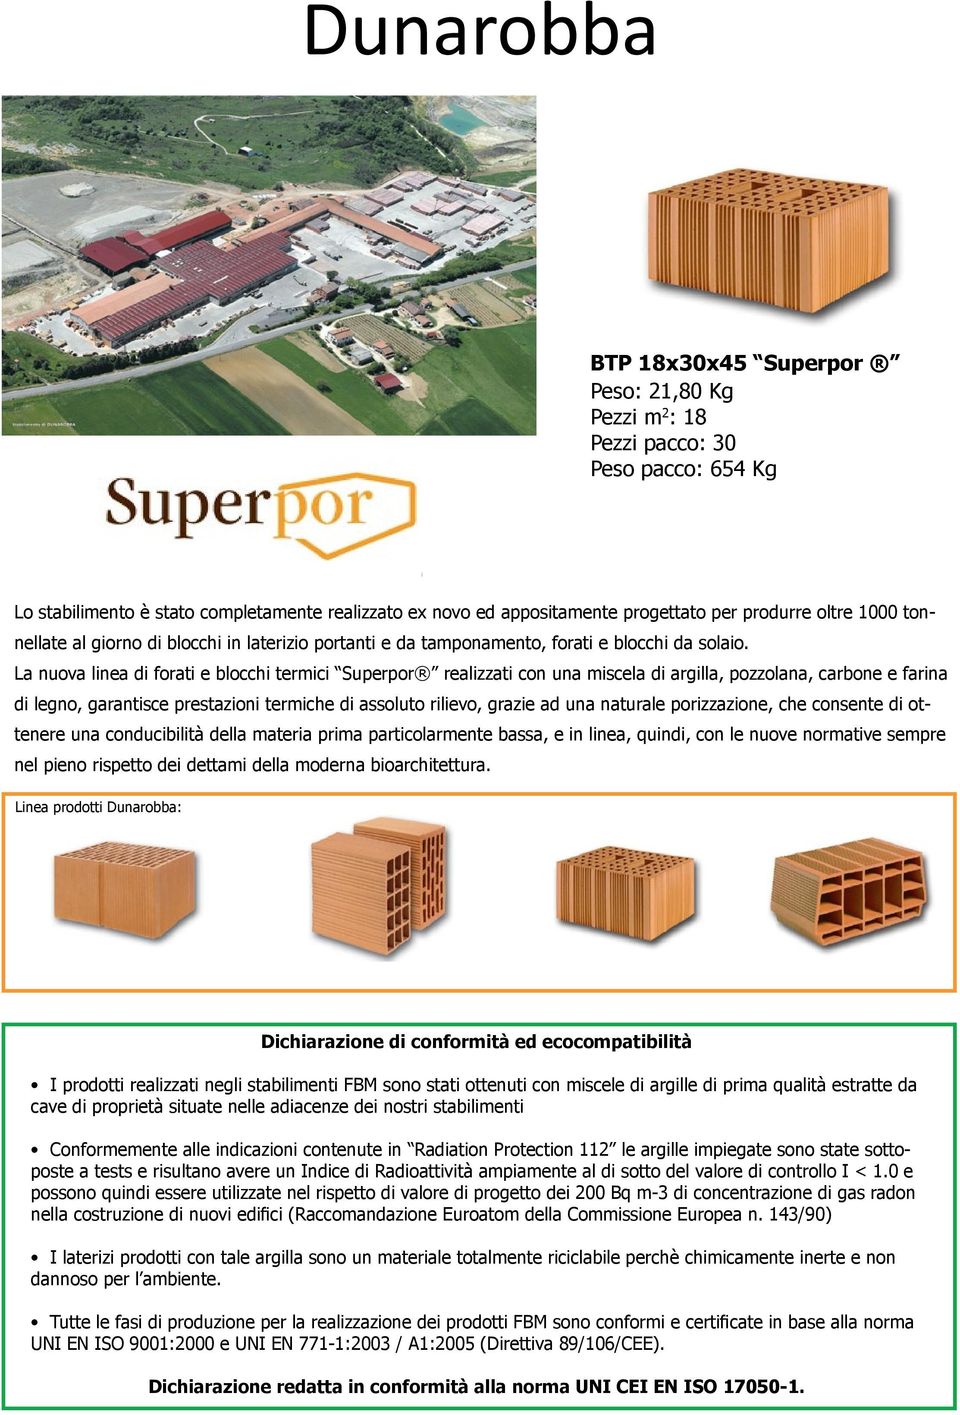 La nuova linea di forati e blocchi termici Superpor realizzati con una miscela di argilla, pozzolana, carbone e farina di legno, garantisce prestazioni termiche di assoluto rilievo, grazie ad una